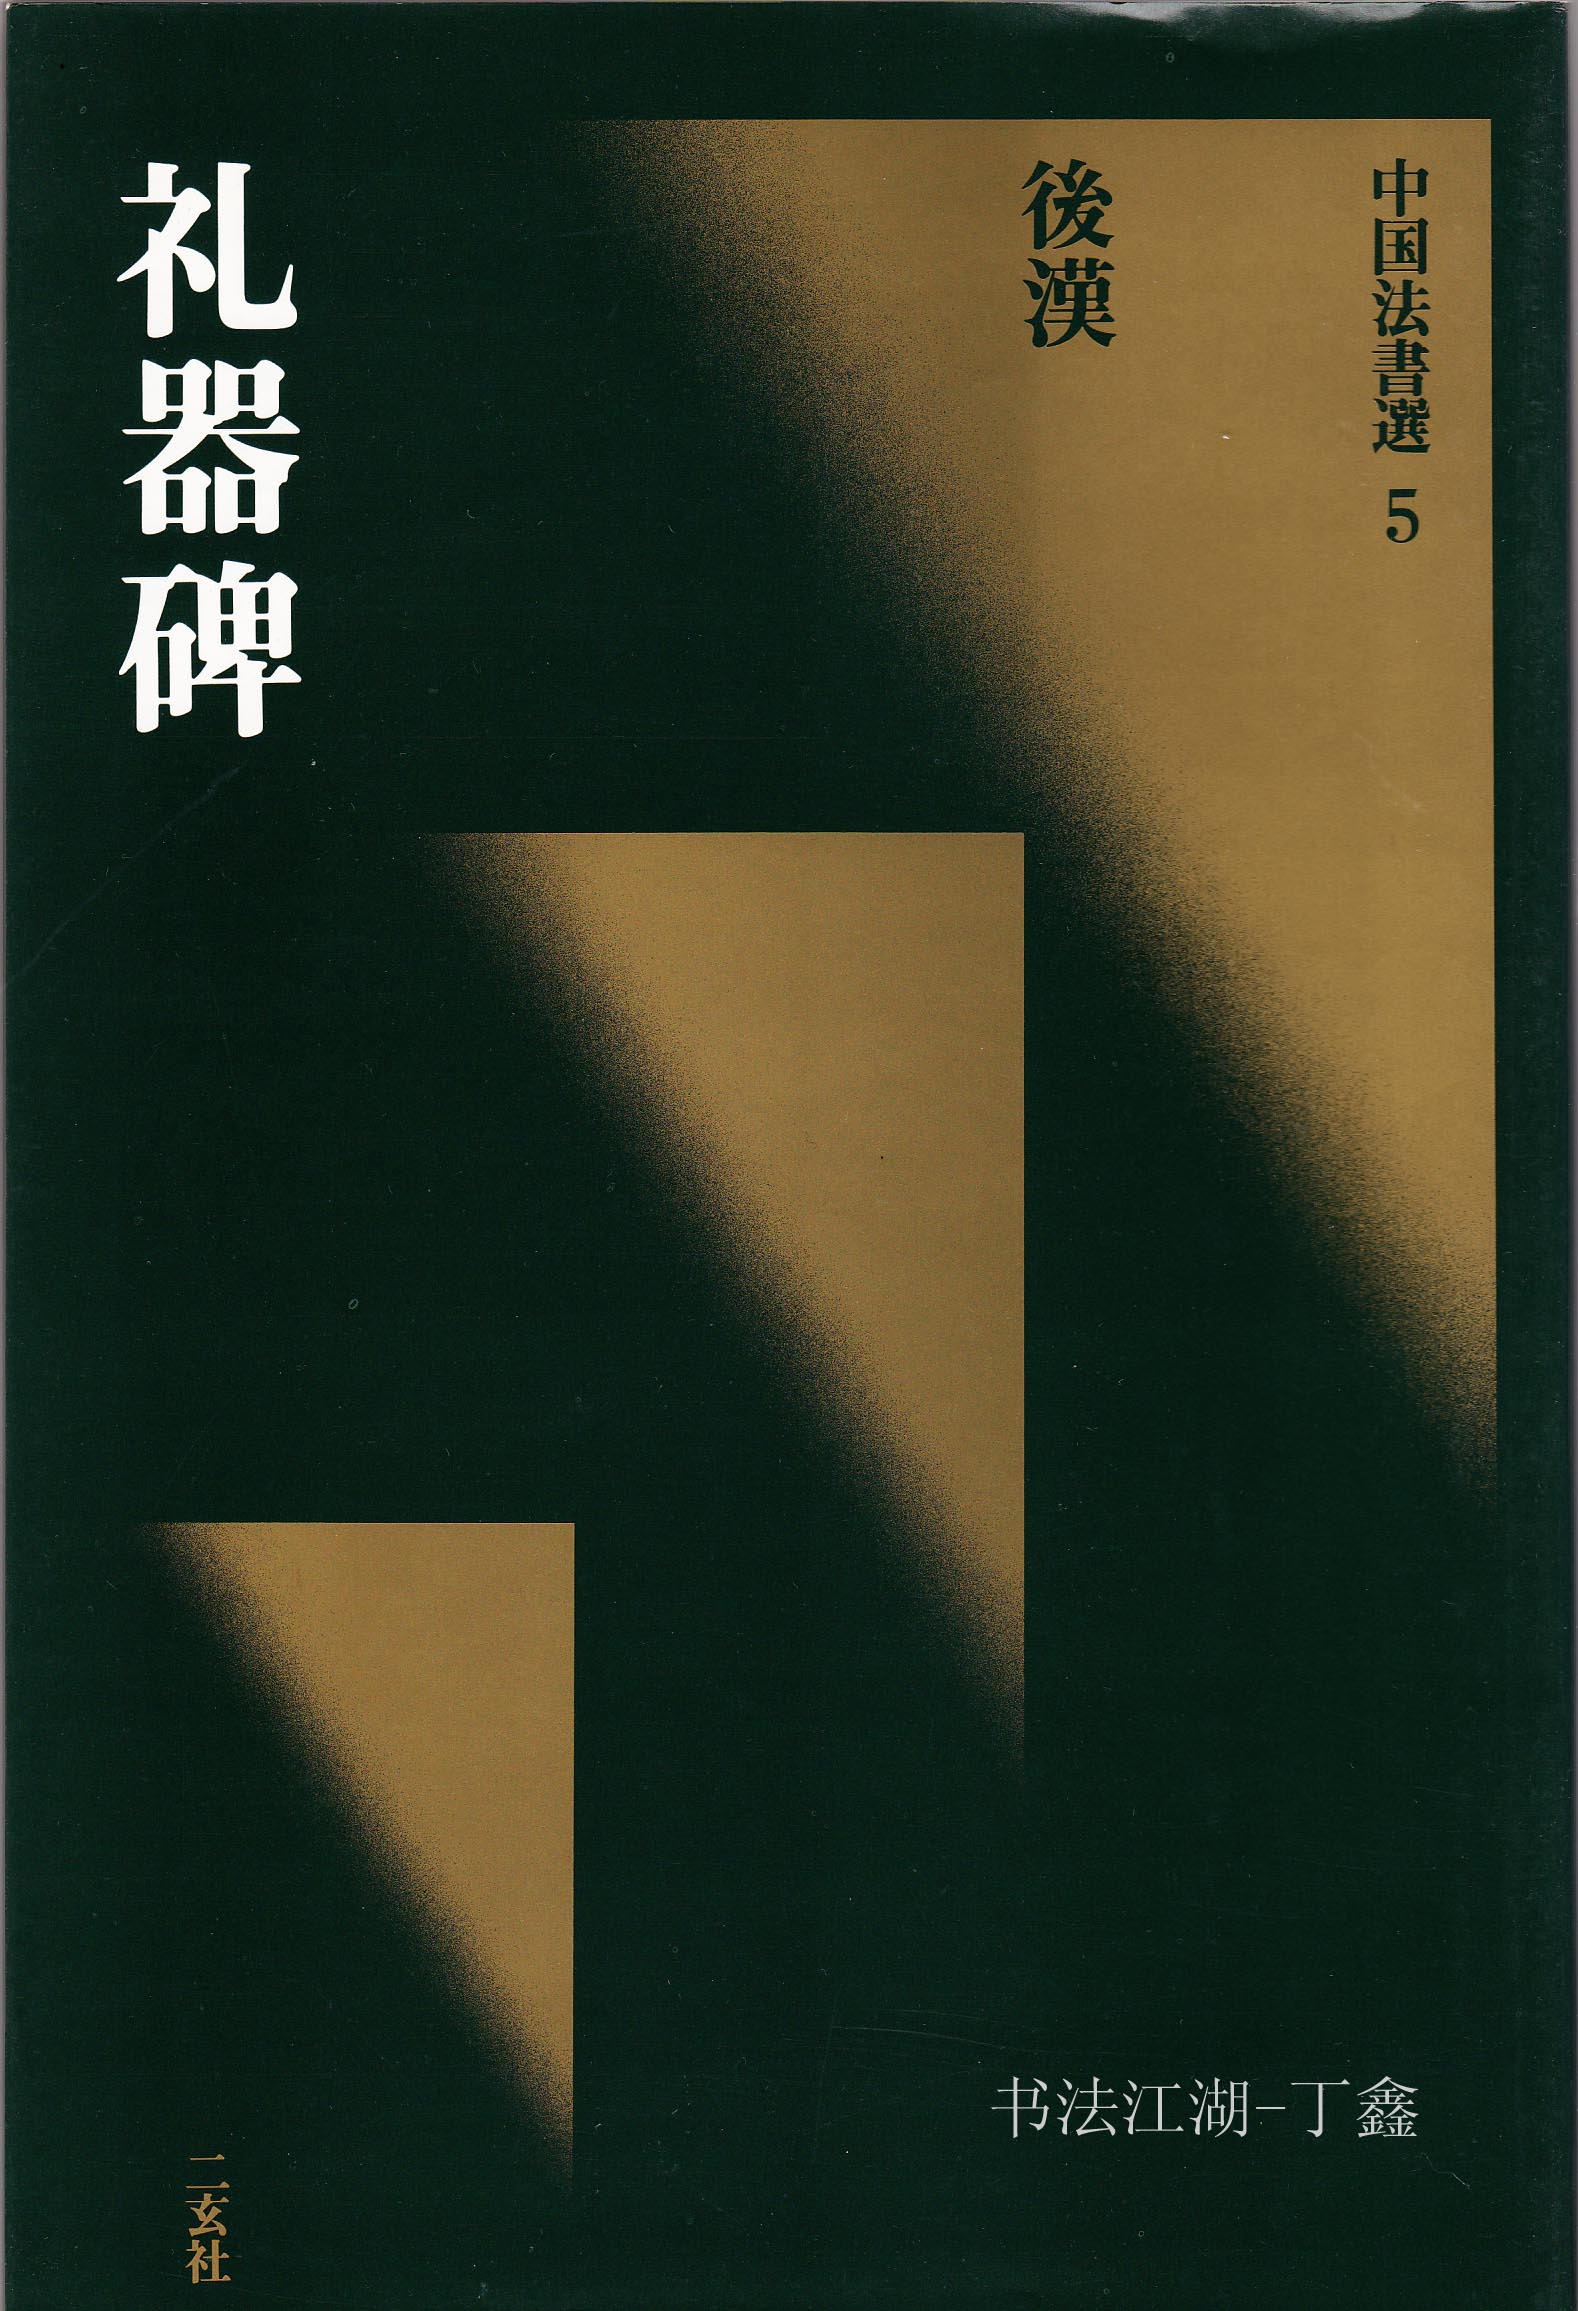 二玄社出版的《中国书法选》全60卷打包下载[JPG]